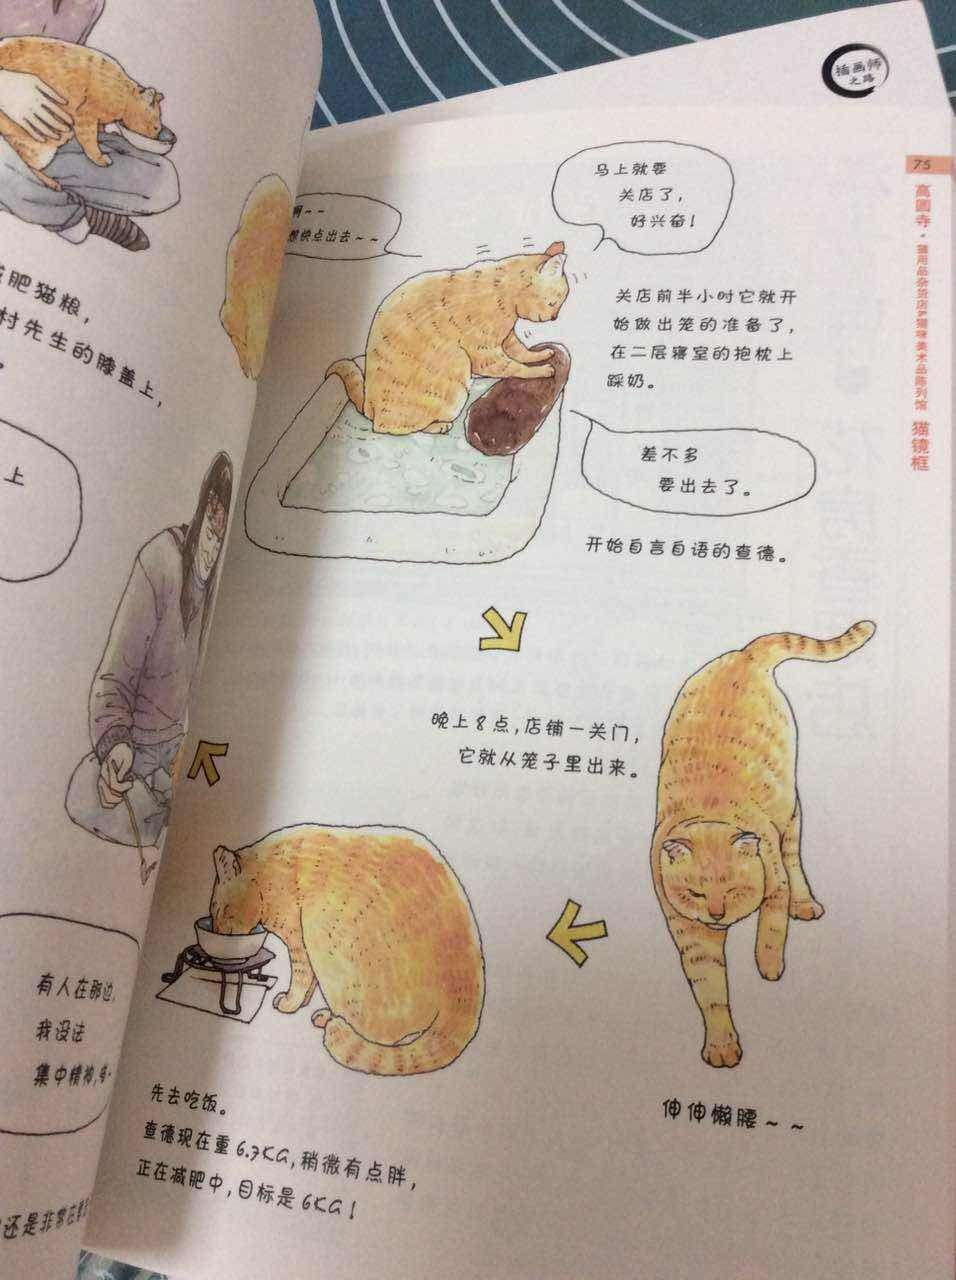 萌萌的猫漫画，和家里的猫猫有点像，很好玩